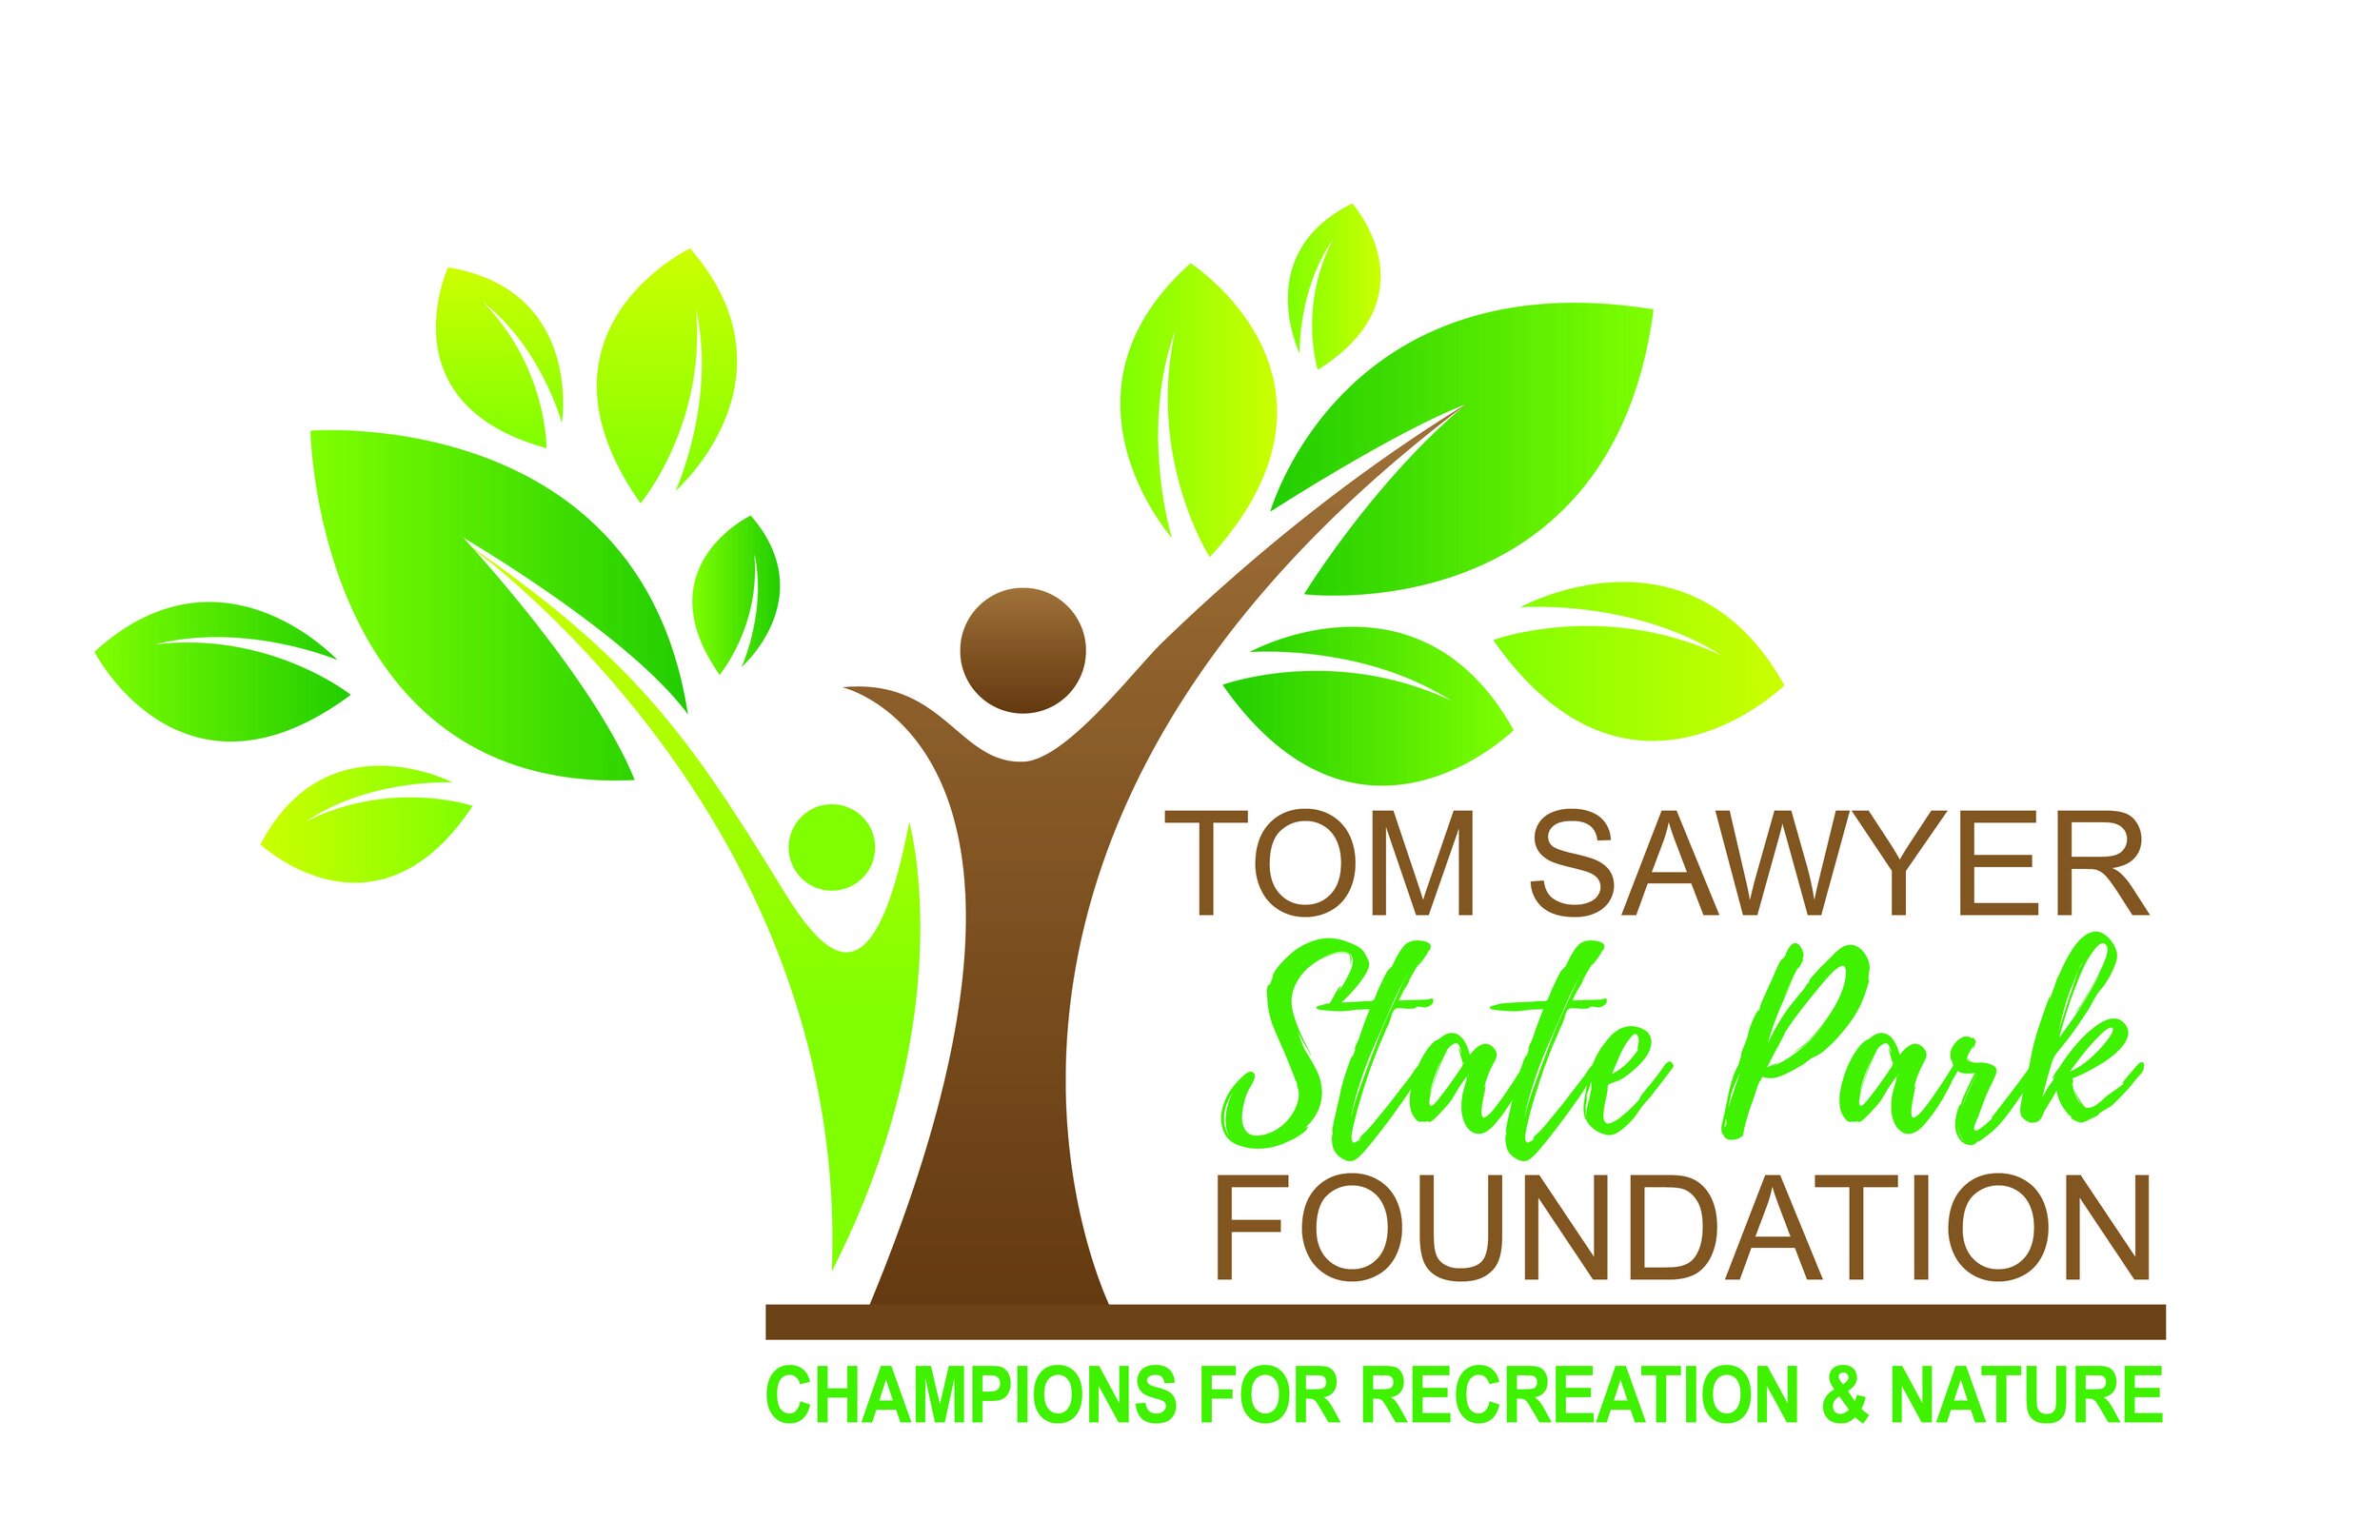 Tom Sawyer State Park Foundation